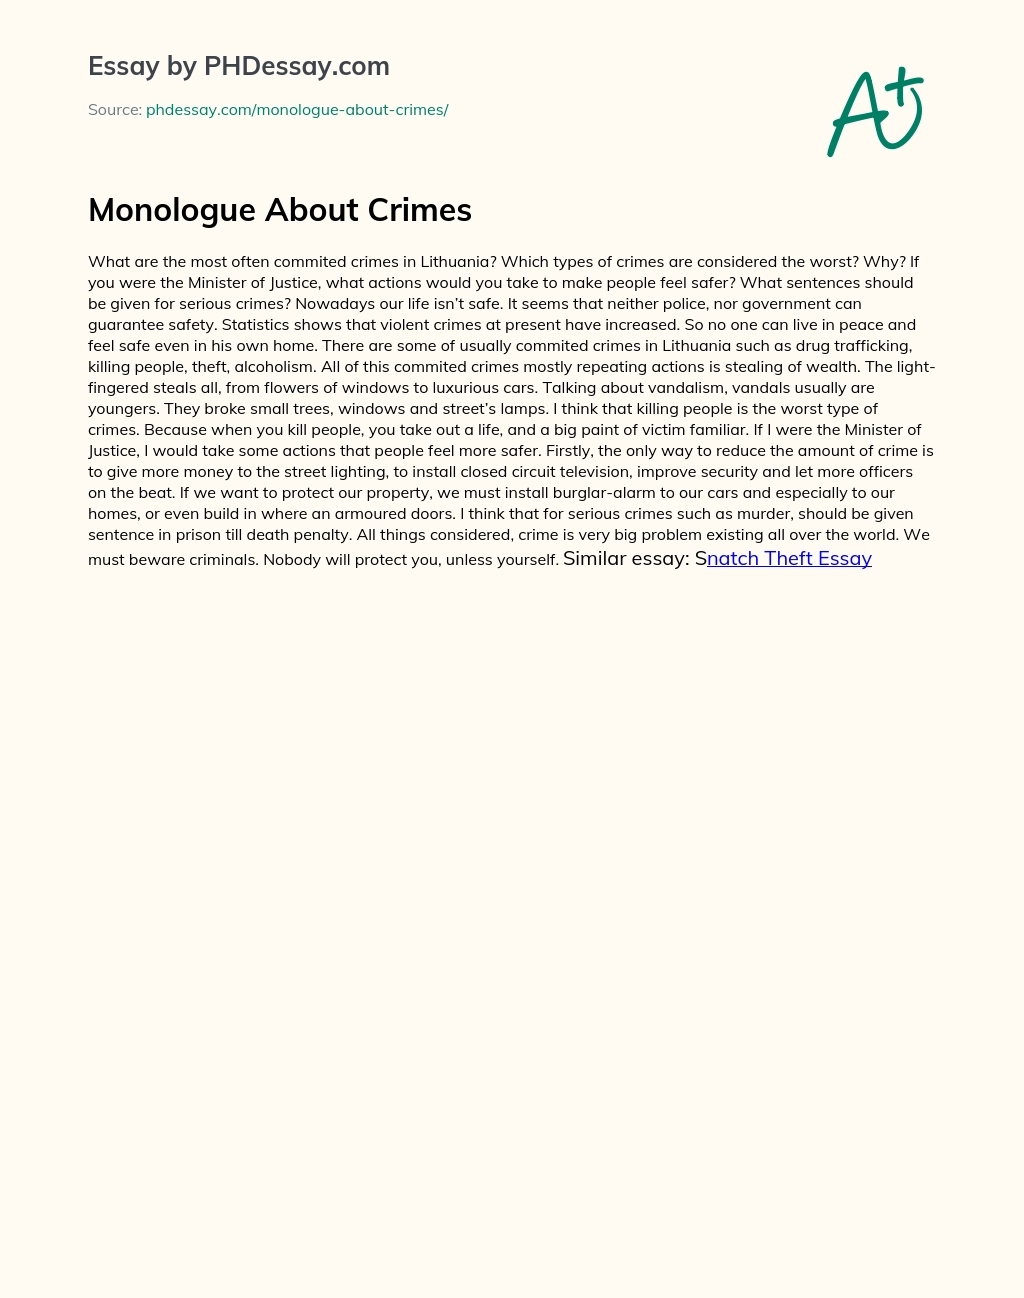 Monologue About Crimes essay